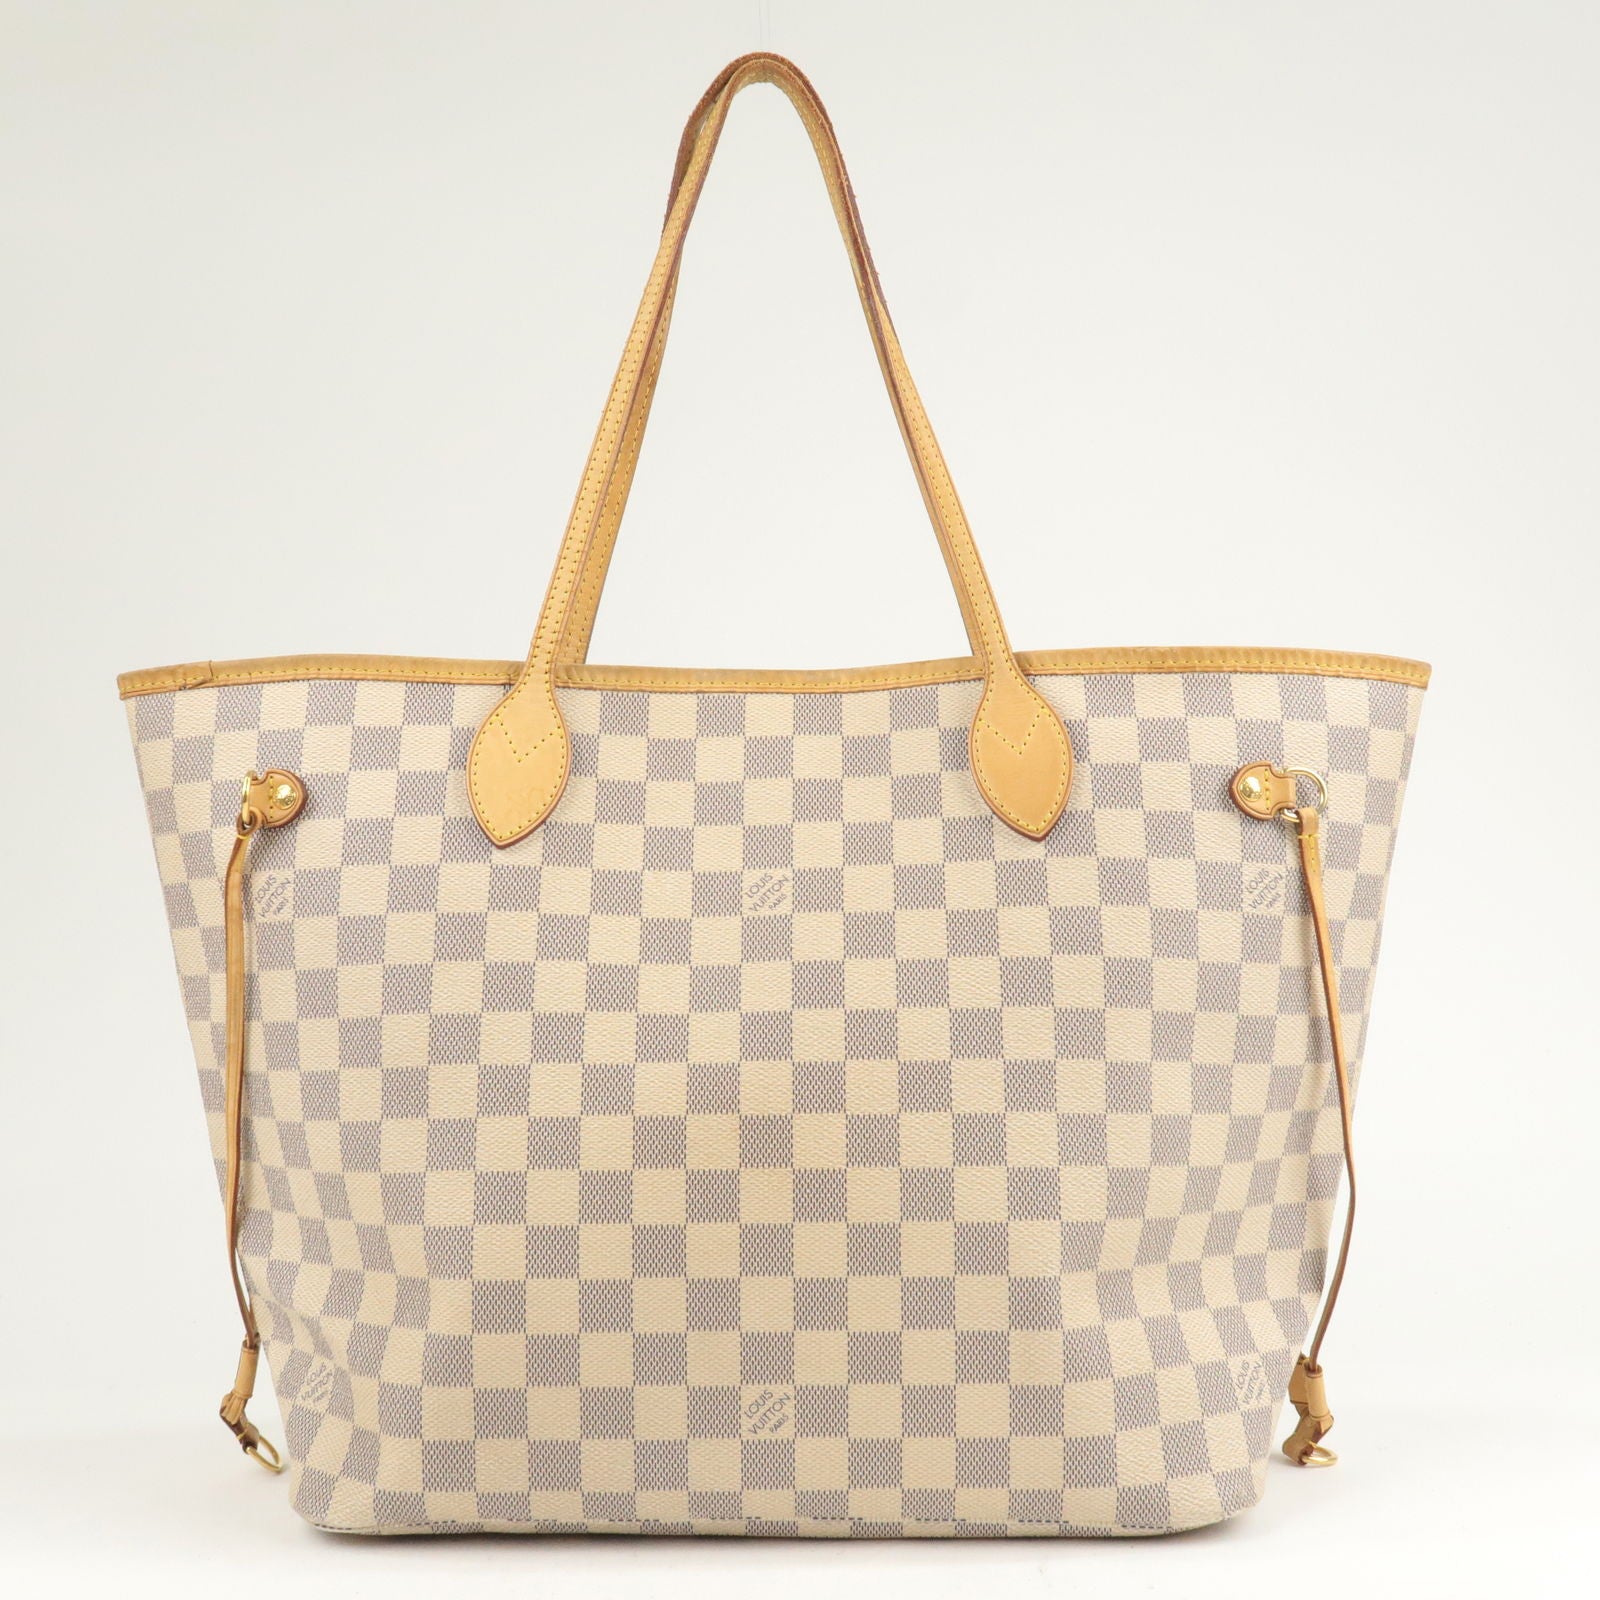 Bolsa Louis Vuitton Very Bag Preta